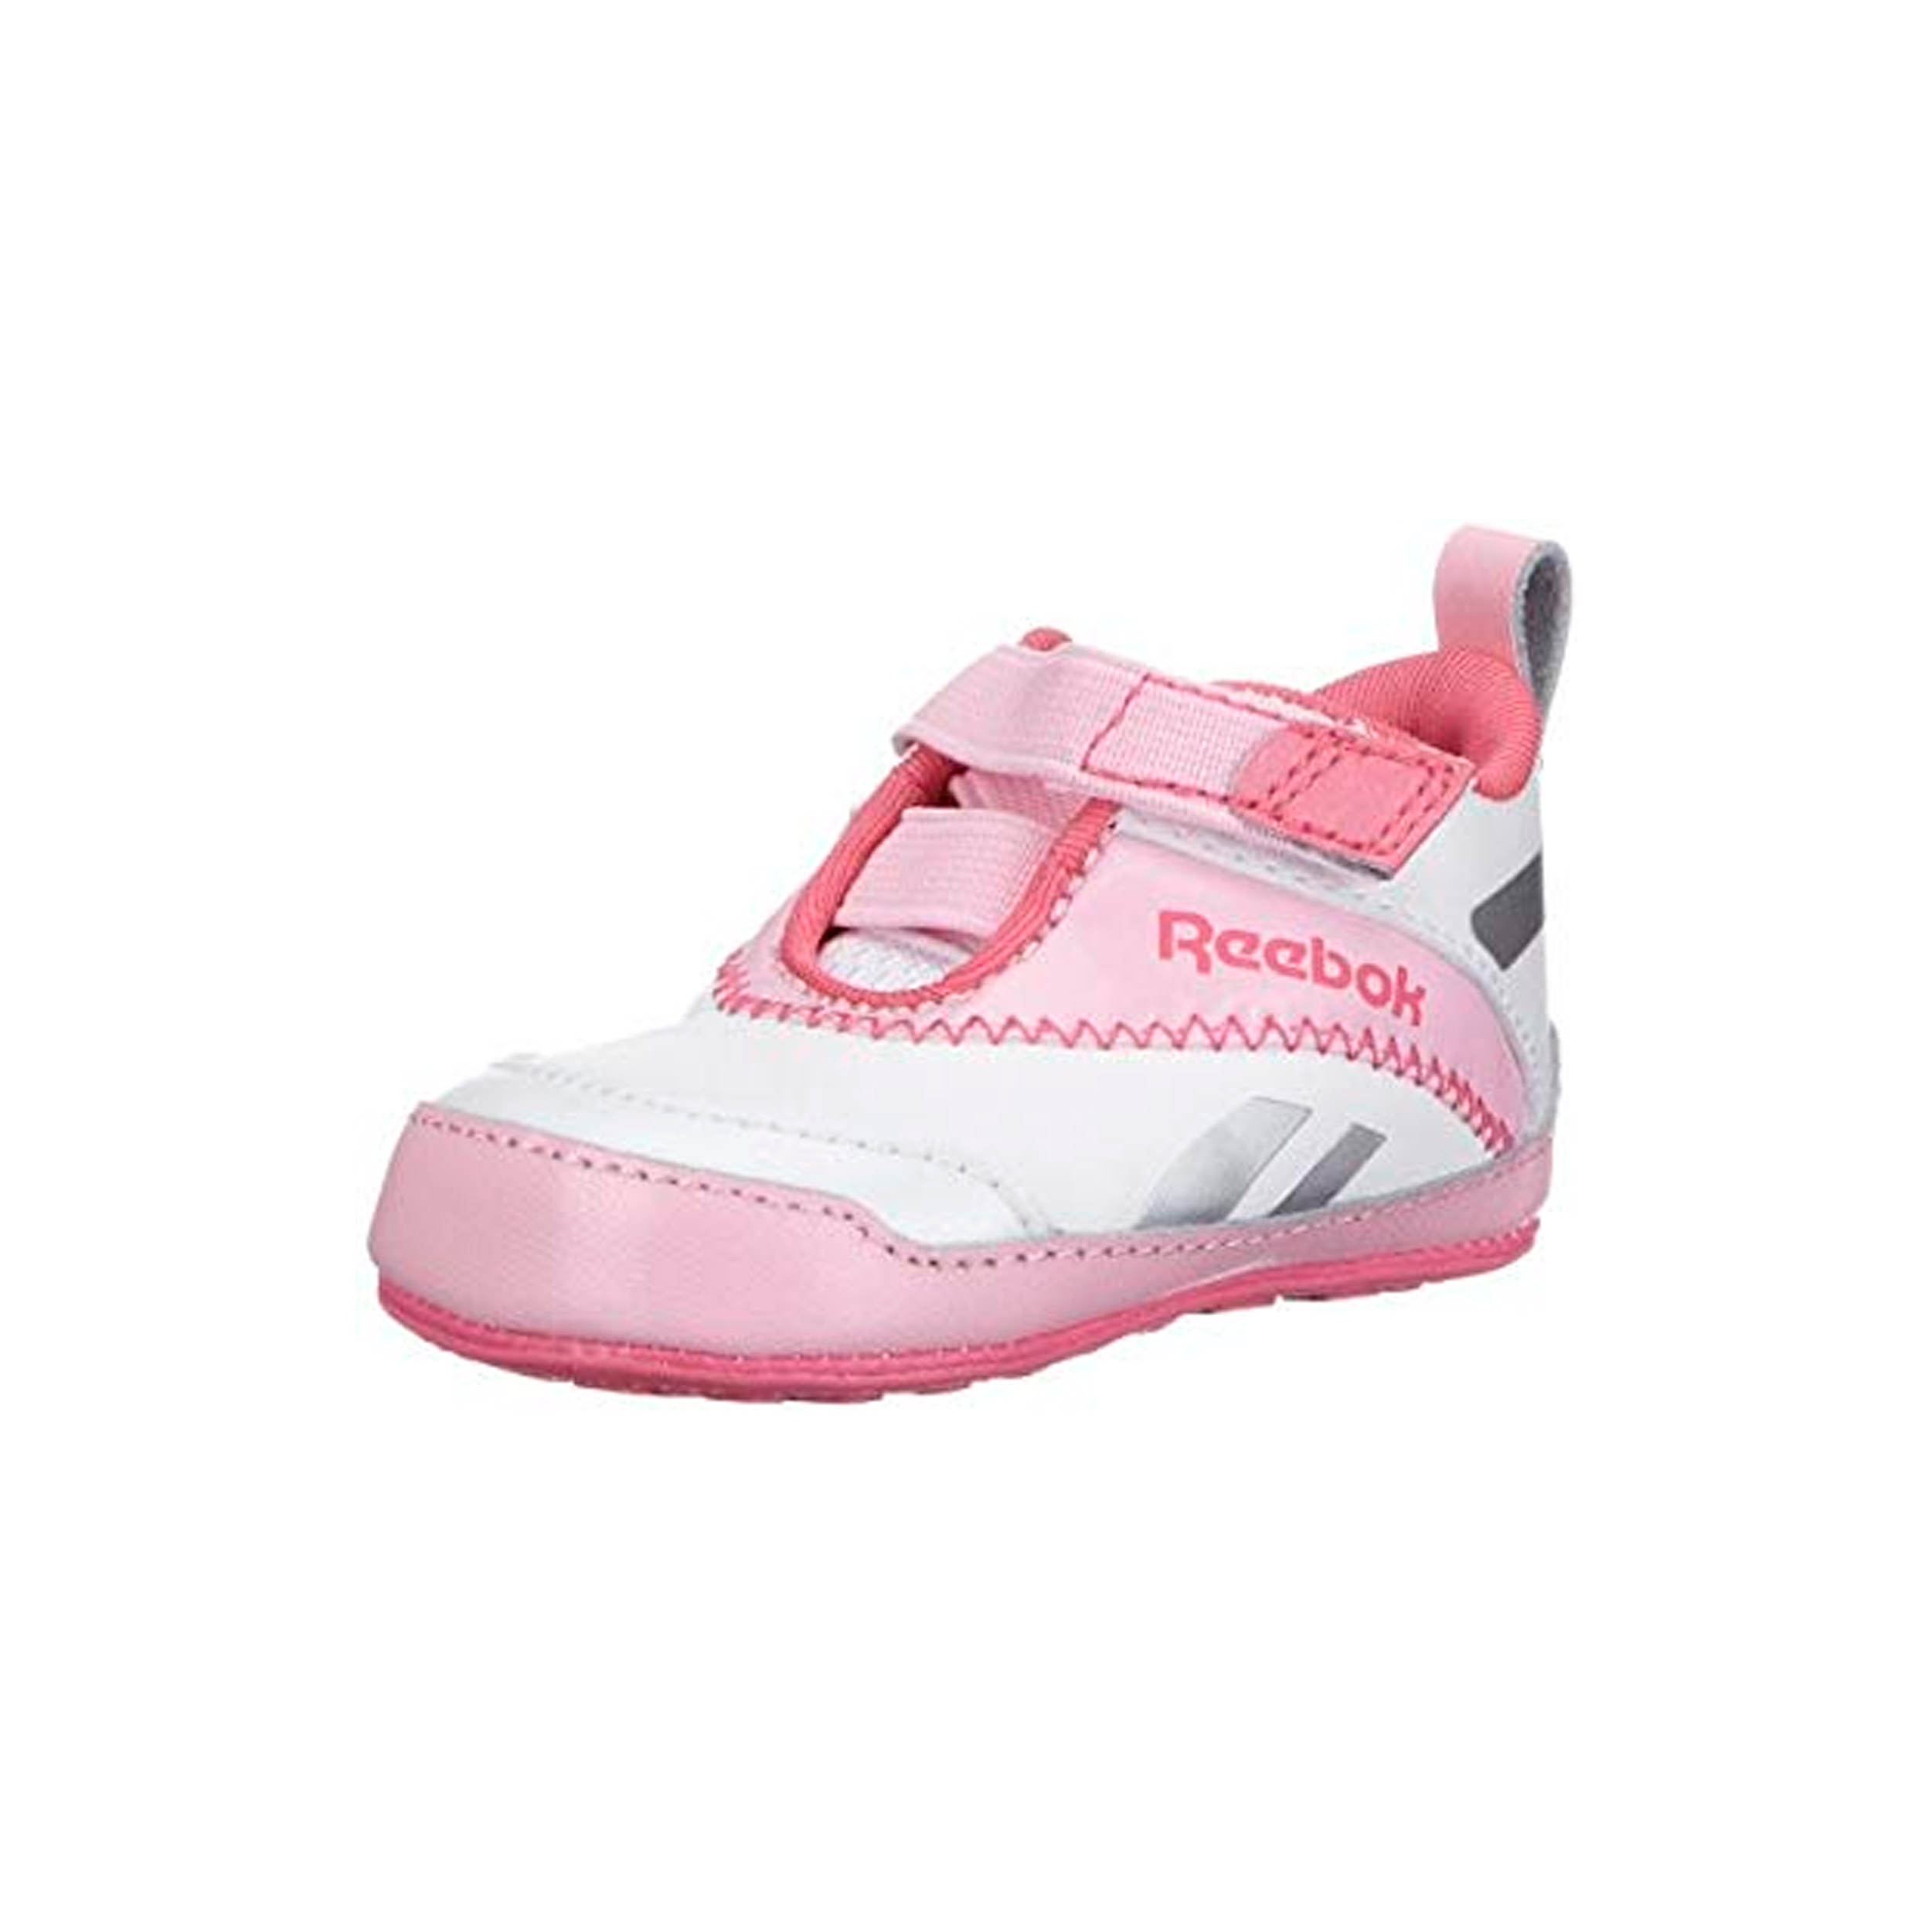 کفش ورزشی نوزادی دخترانه ریباک سری Venture Flex CB مدل J91775